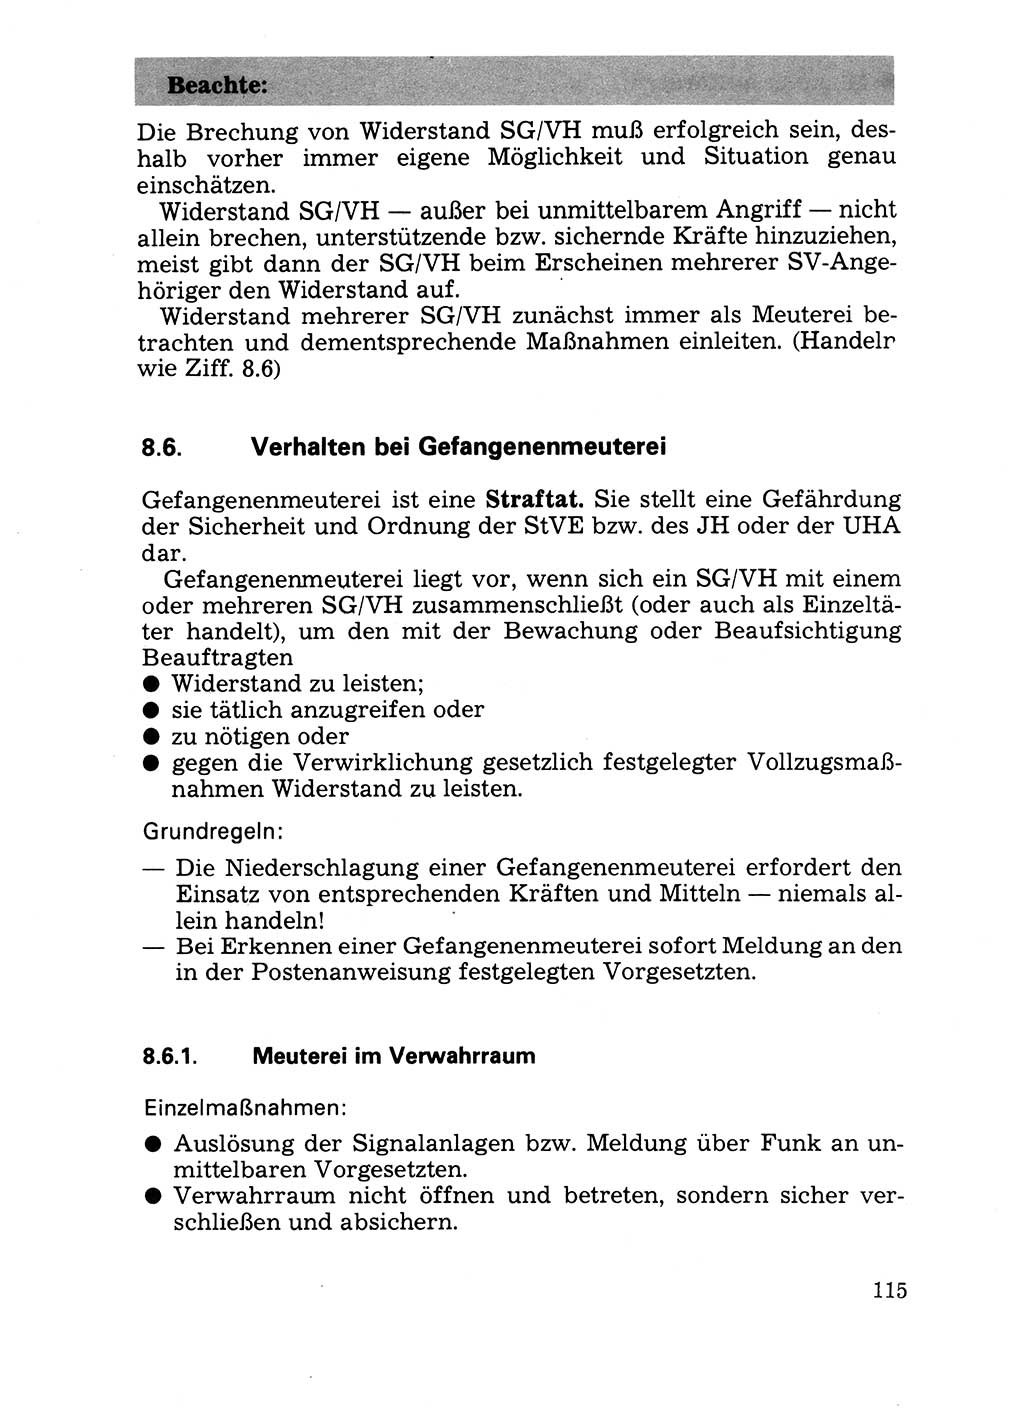 Handbuch für operative Dienste, Abteilung Strafvollzug (SV) [Ministerium des Innern (MdI) Deutsche Demokratische Republik (DDR)] 1981, Seite 115 (Hb. op. D. Abt. SV MdI DDR 1981, S. 115)